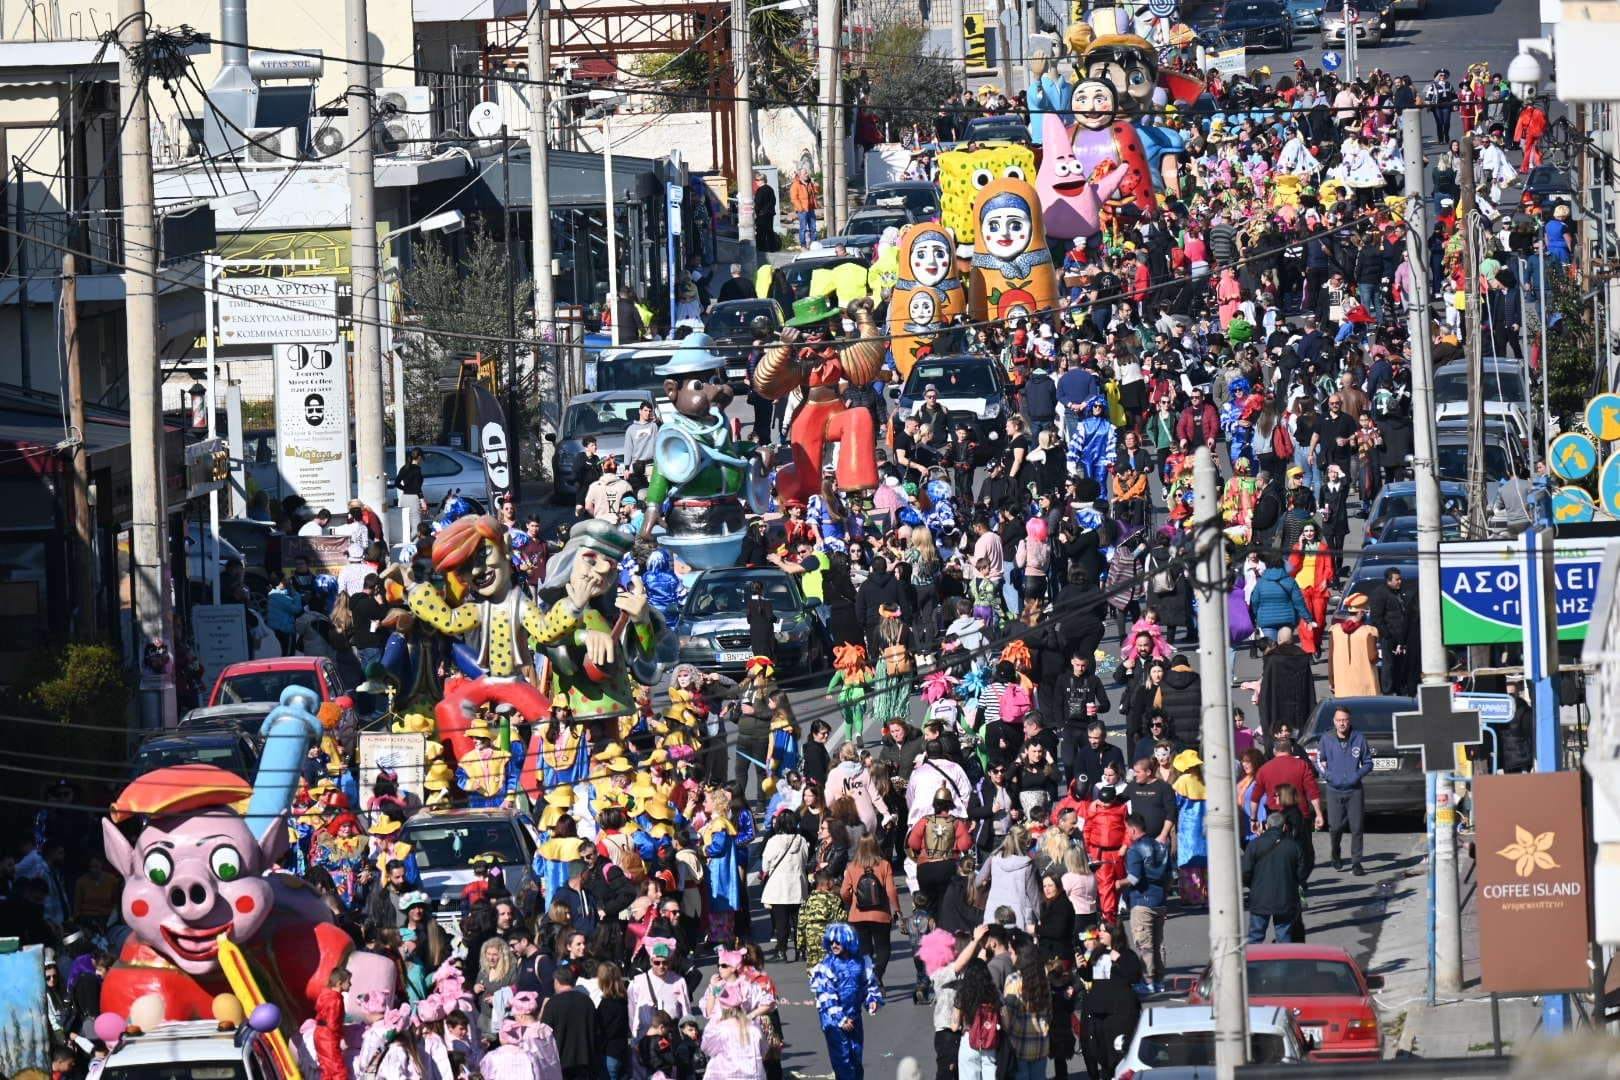 Εντυπωσιακή η Καρναβαλική παρέλαση στις Αχαρνές. Χιλιάδες καρναβαλιστών και επισκεπτών διασκέδασαν με τη ψυχή τους!